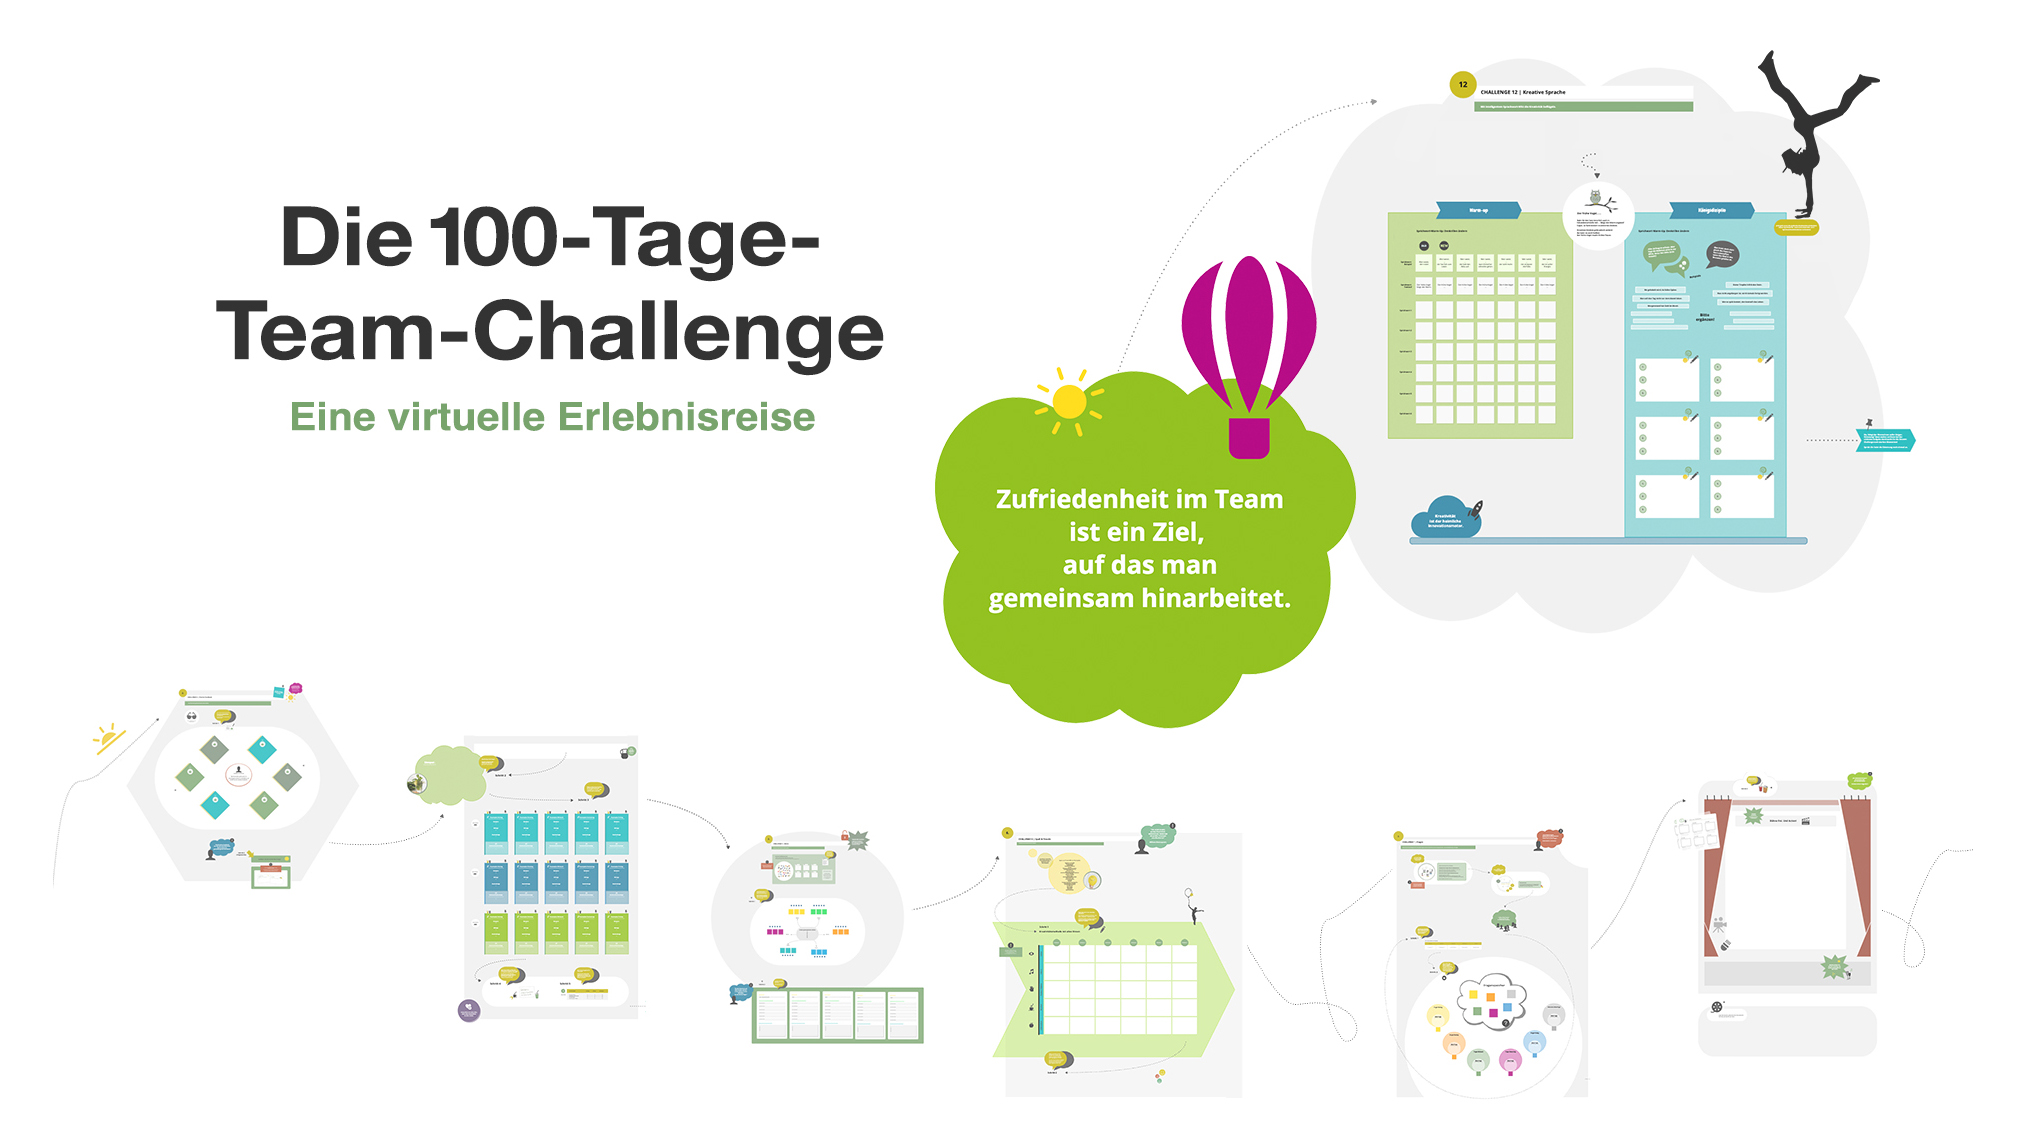 Die 100-Tage-Team-Challenge - Eine virtuelle Erlebnisreise auf Conceptboard